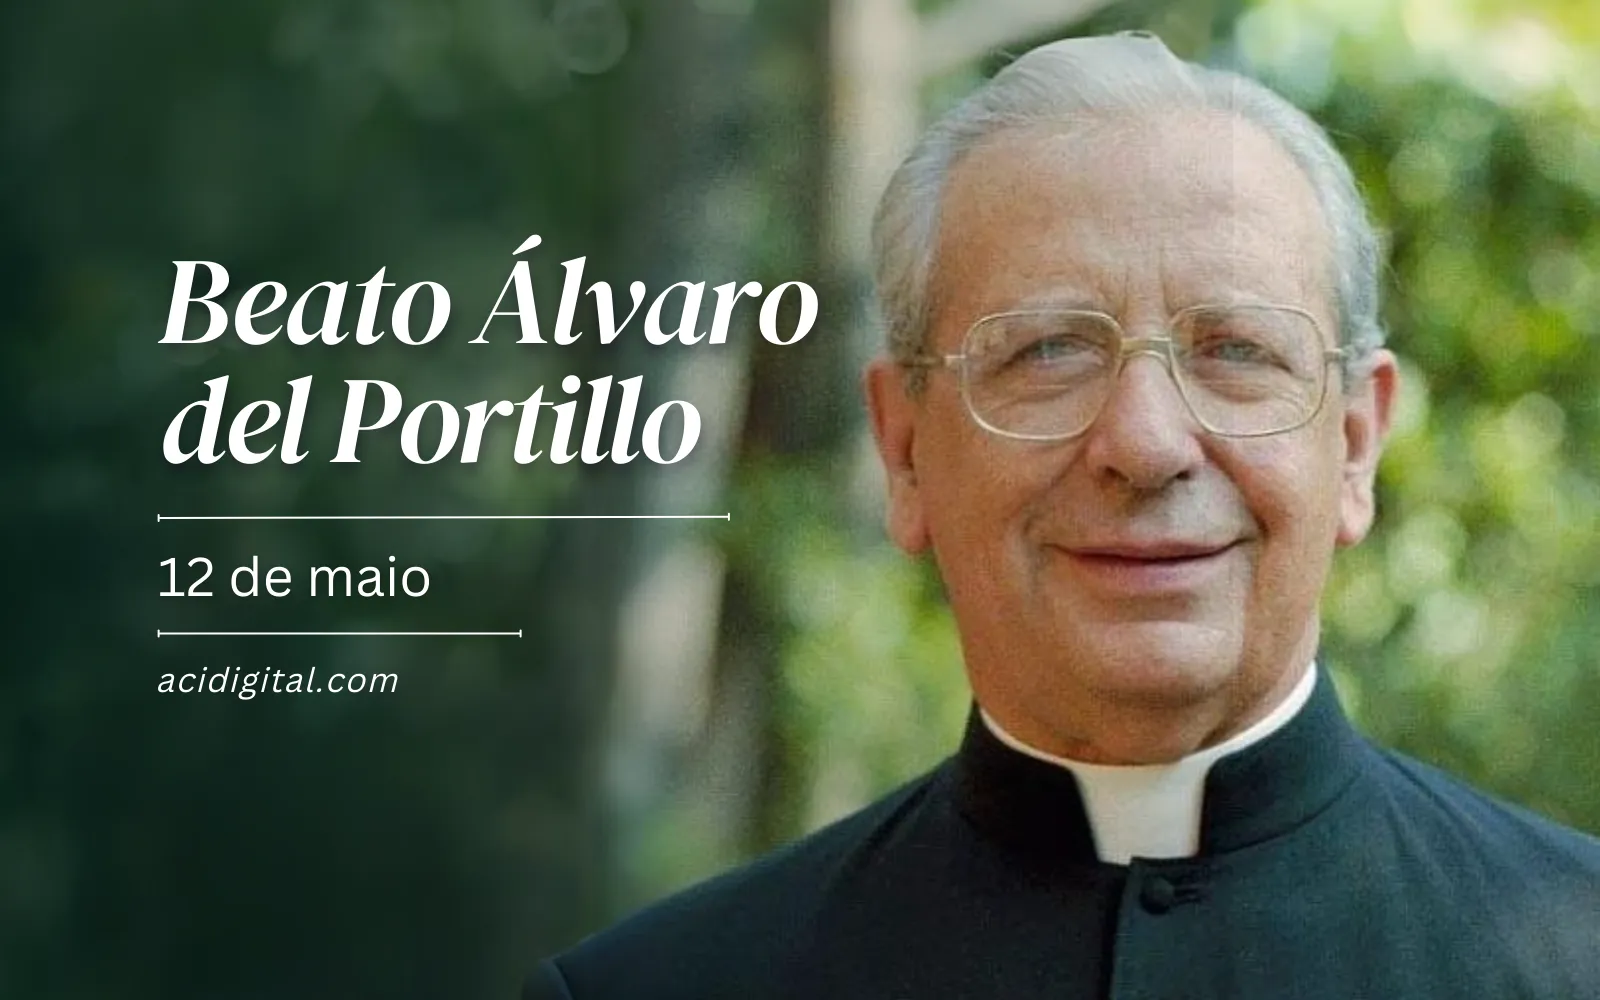  Hoje é a festa do beato Álvaro del Portillo, sucessor de são Josemaria Escrivá 